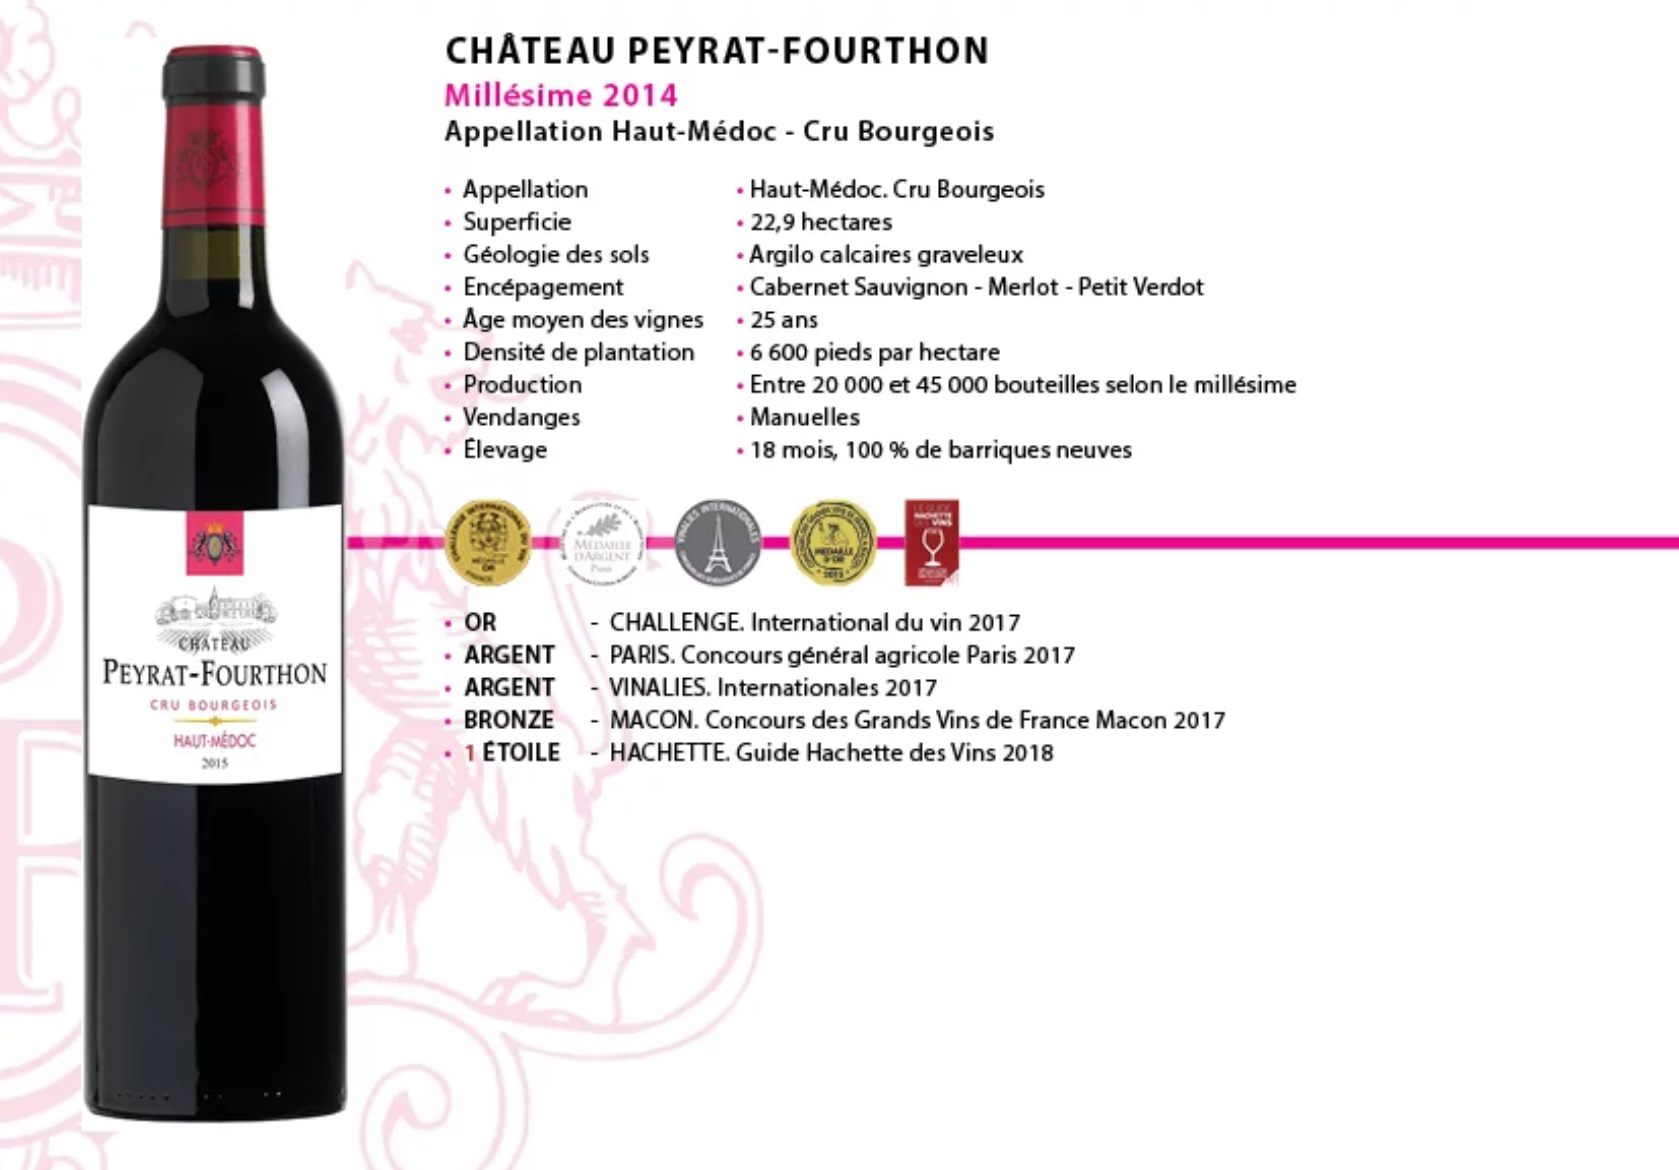 2014 Chateau Peyrat-Fourthon www.luxfood-shop.fr